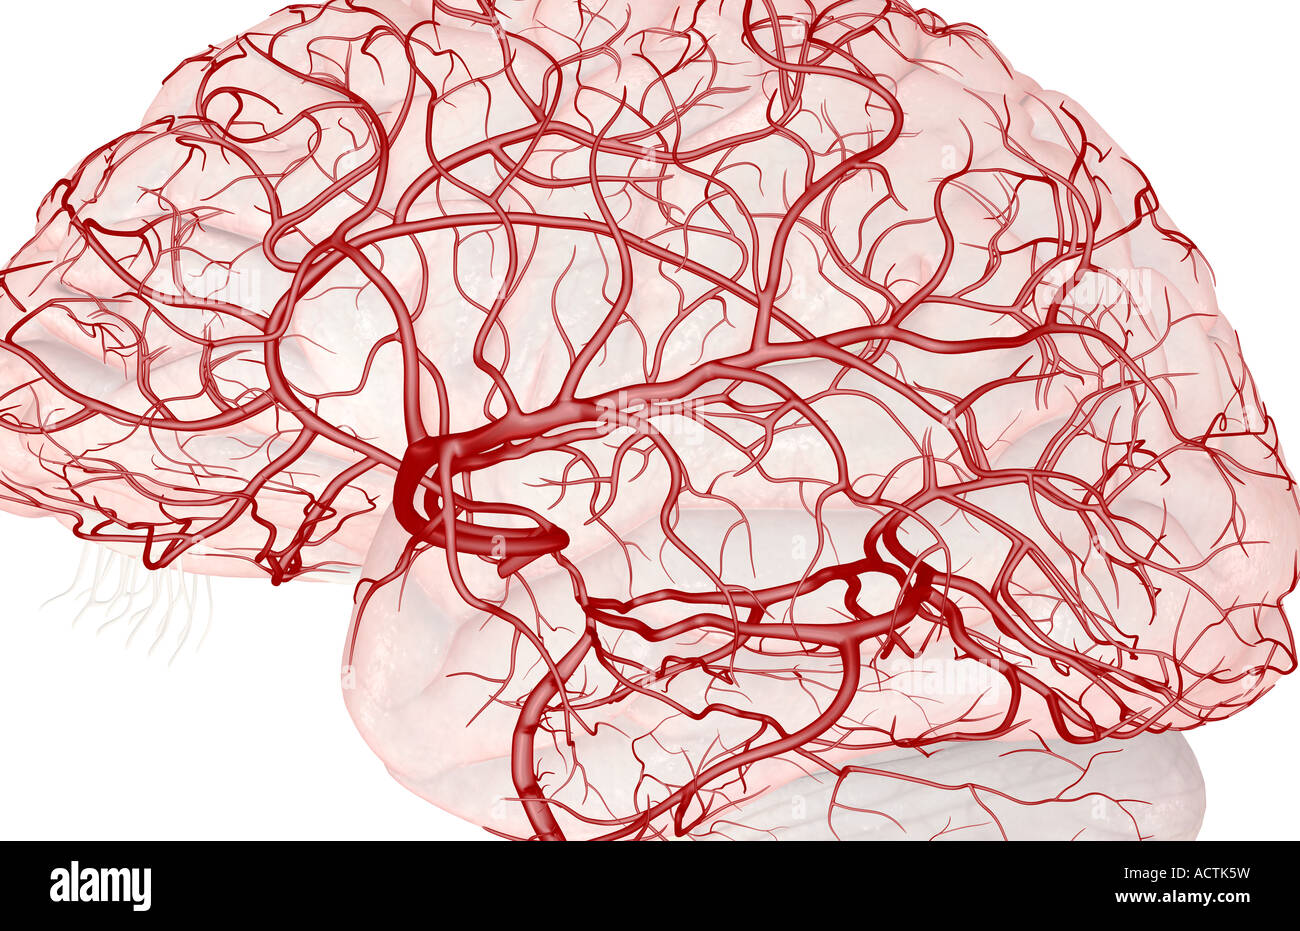 Мозговые артерии латынь. Кровеносные сосуды головного мозга. Артерии мозга. Кровеносные сосуды головы.